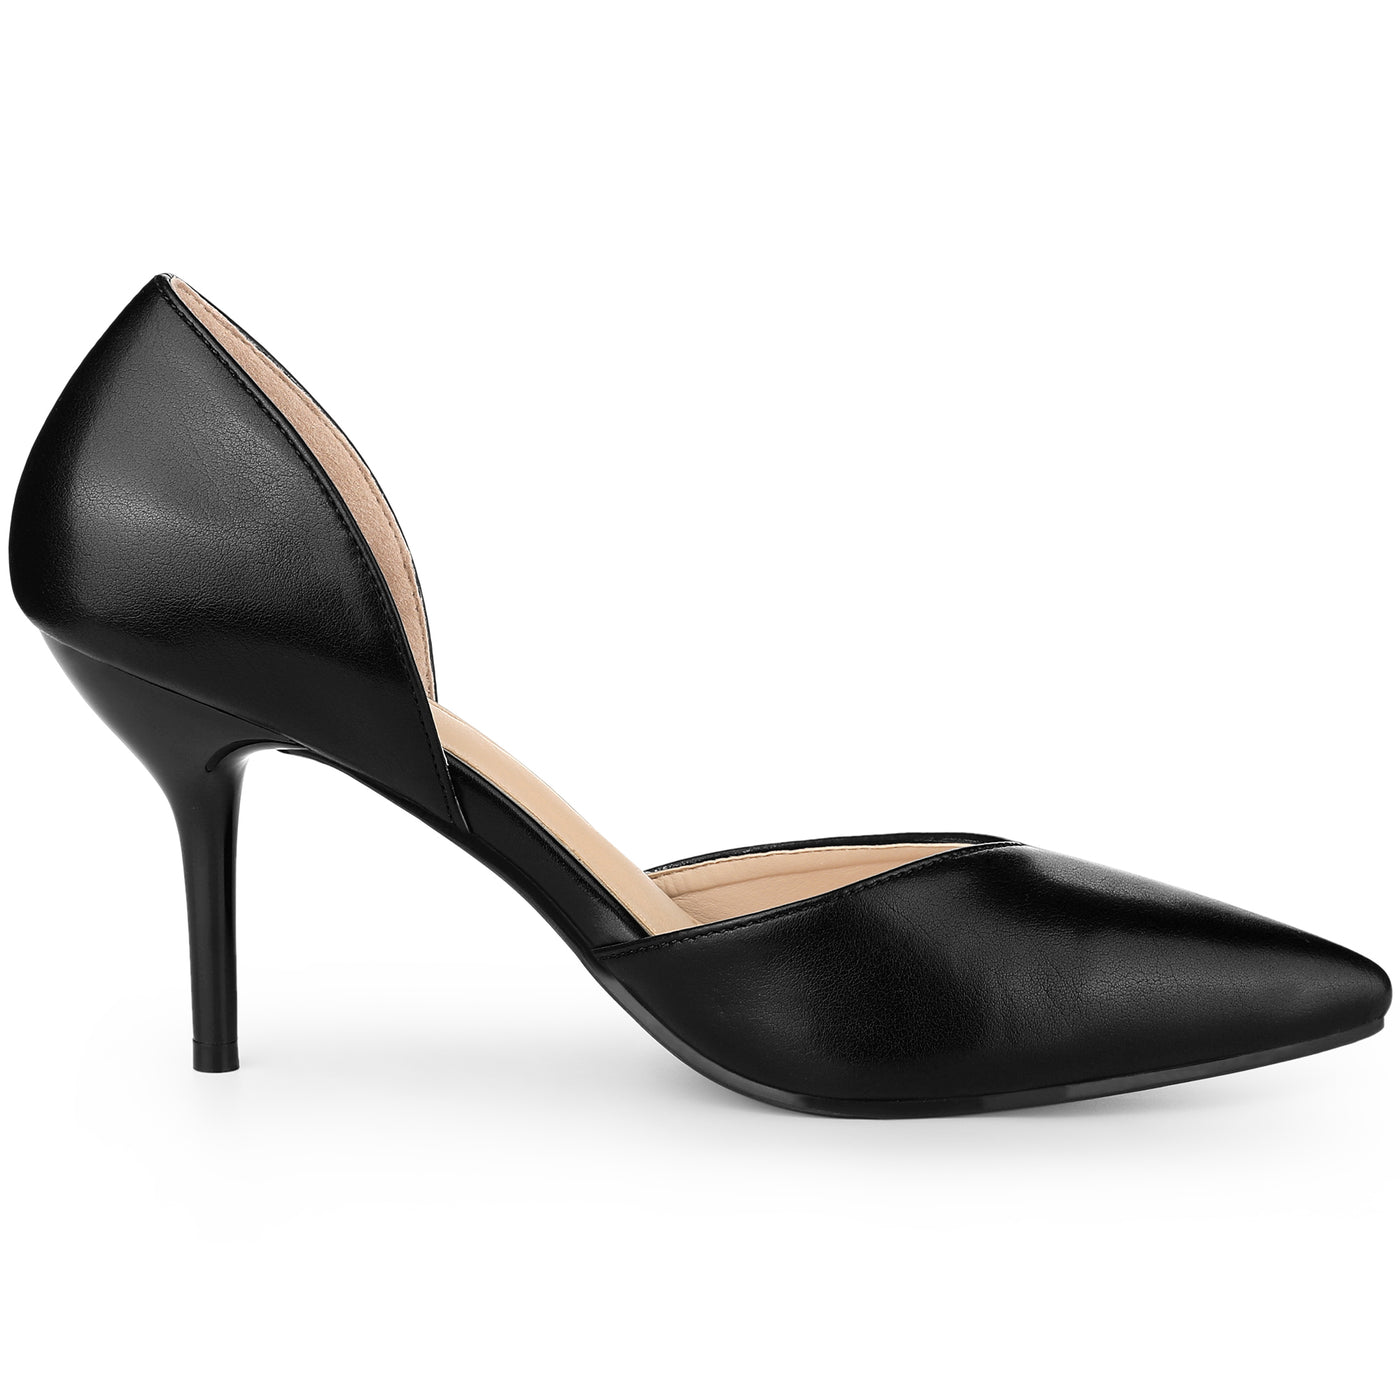 Allegra K Women's Pointy Toe Slip on Stiletto Heel Pump Sandals